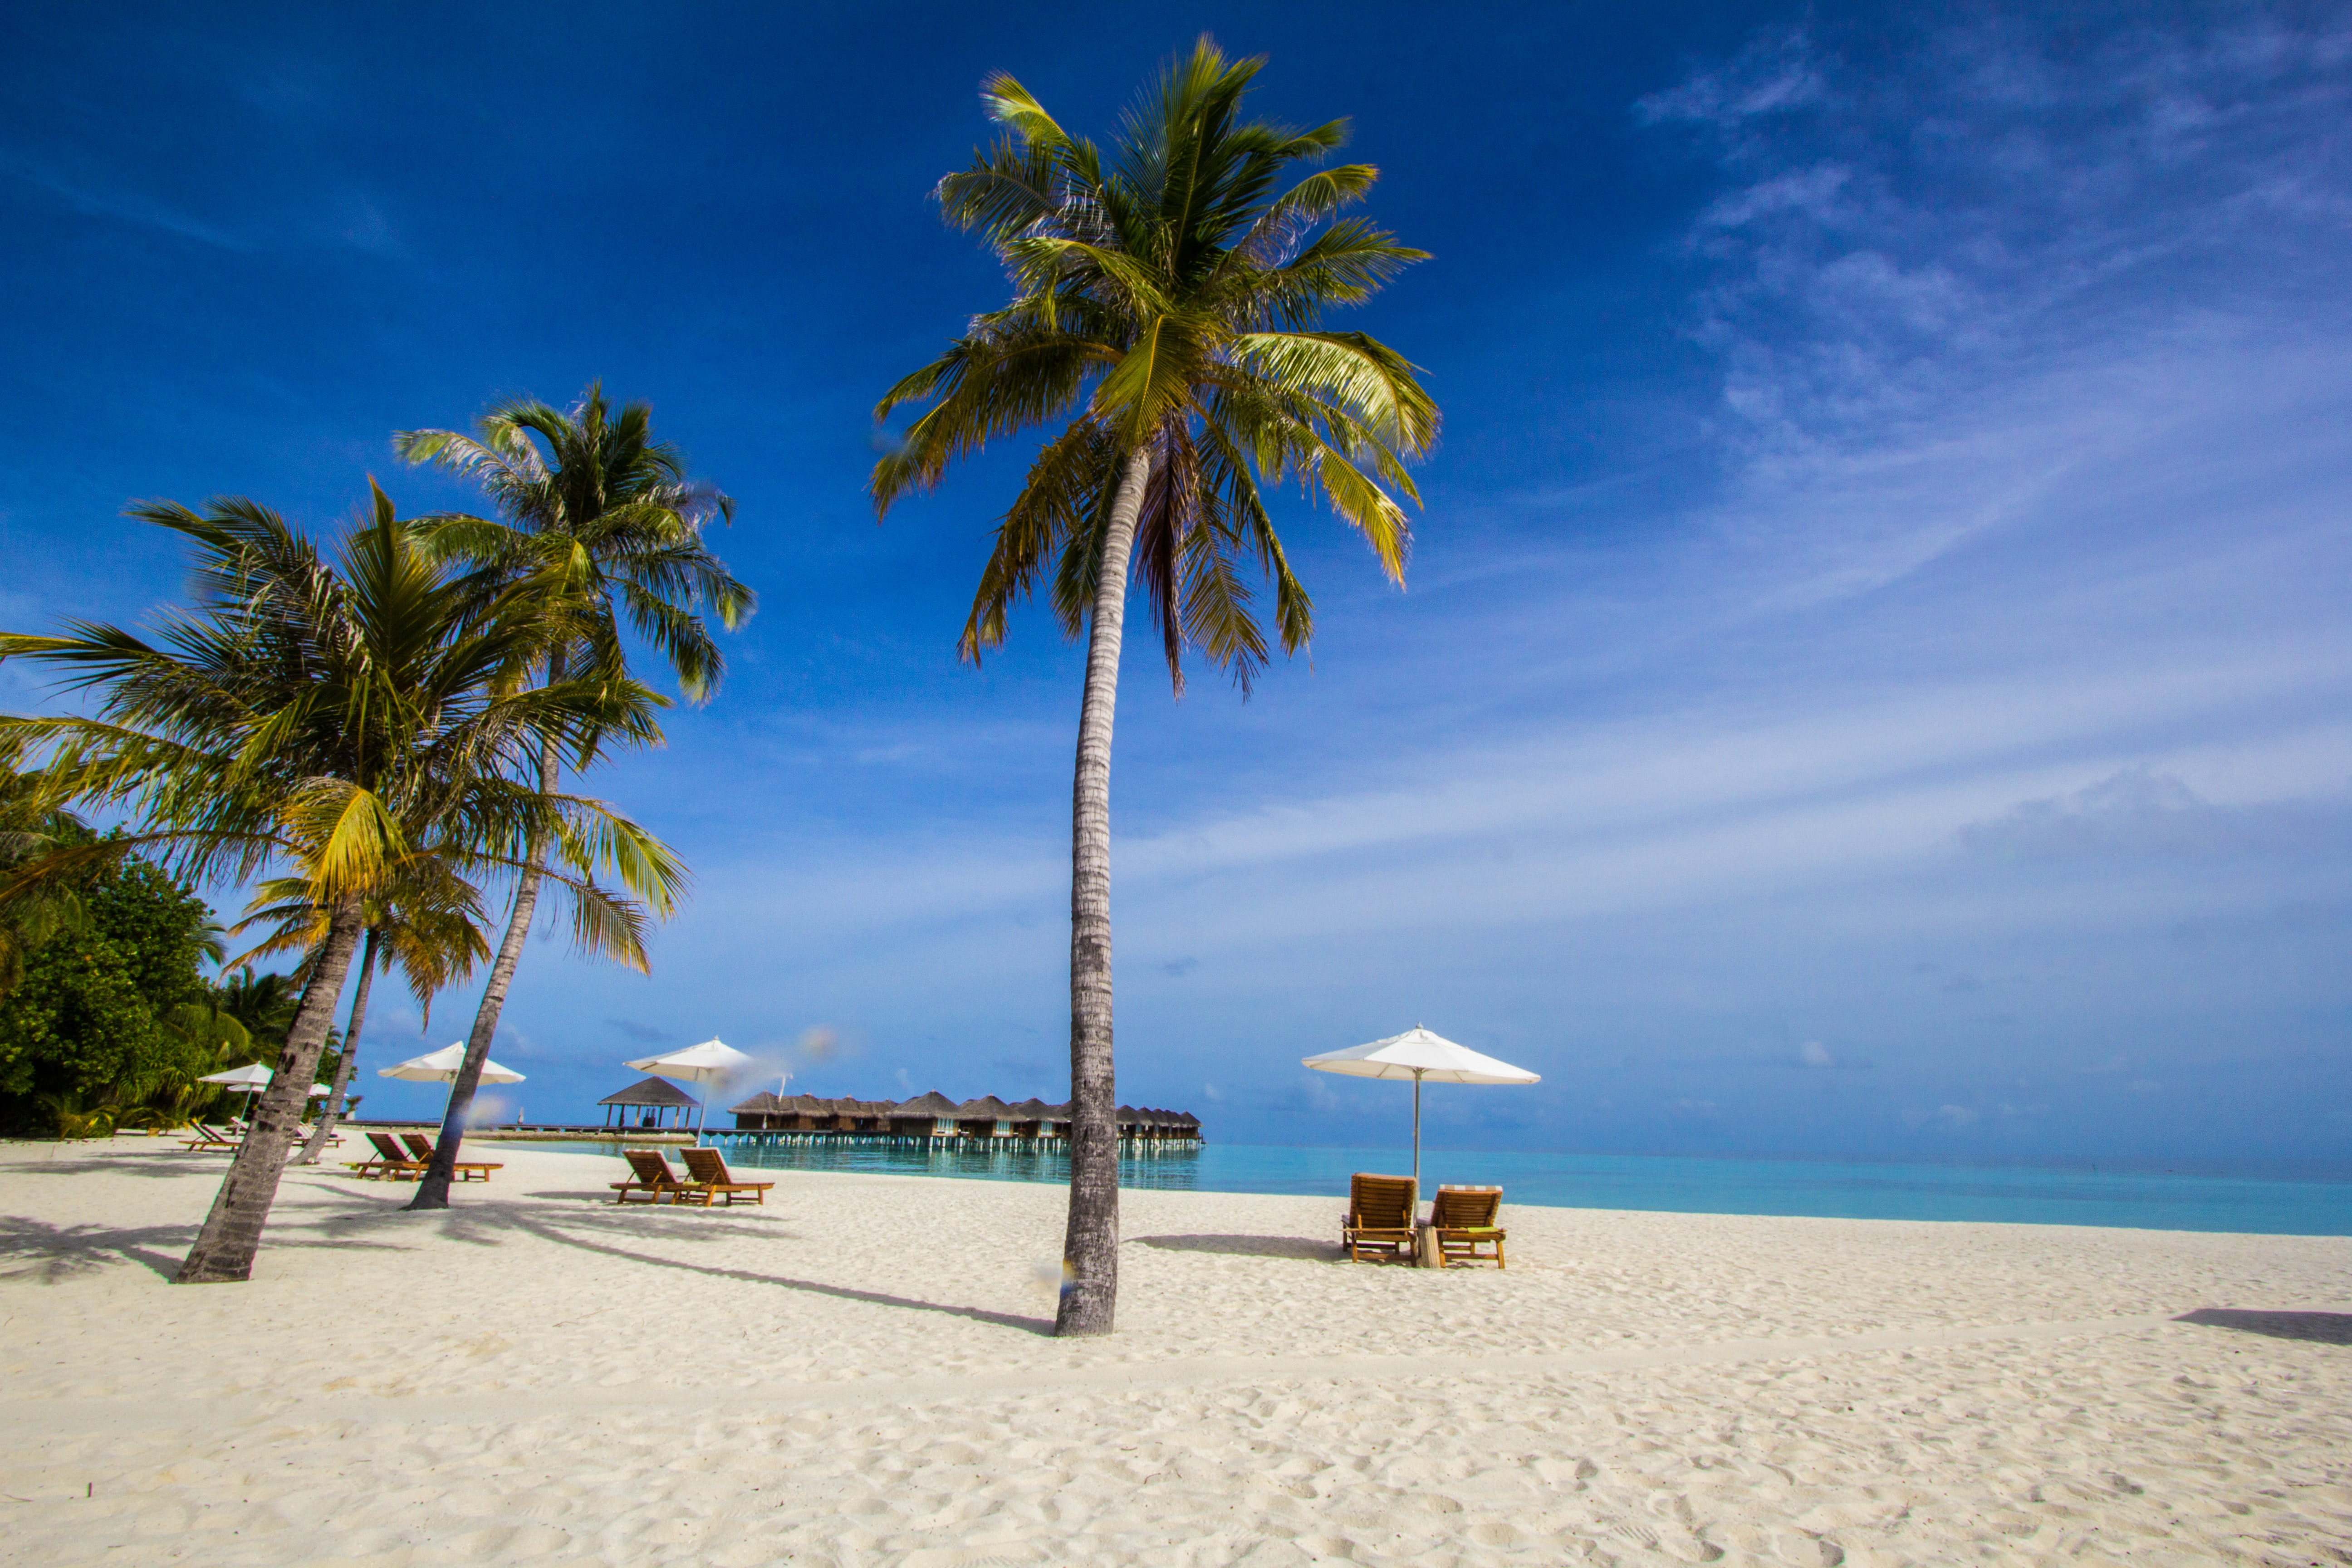 La Cabana Maldives